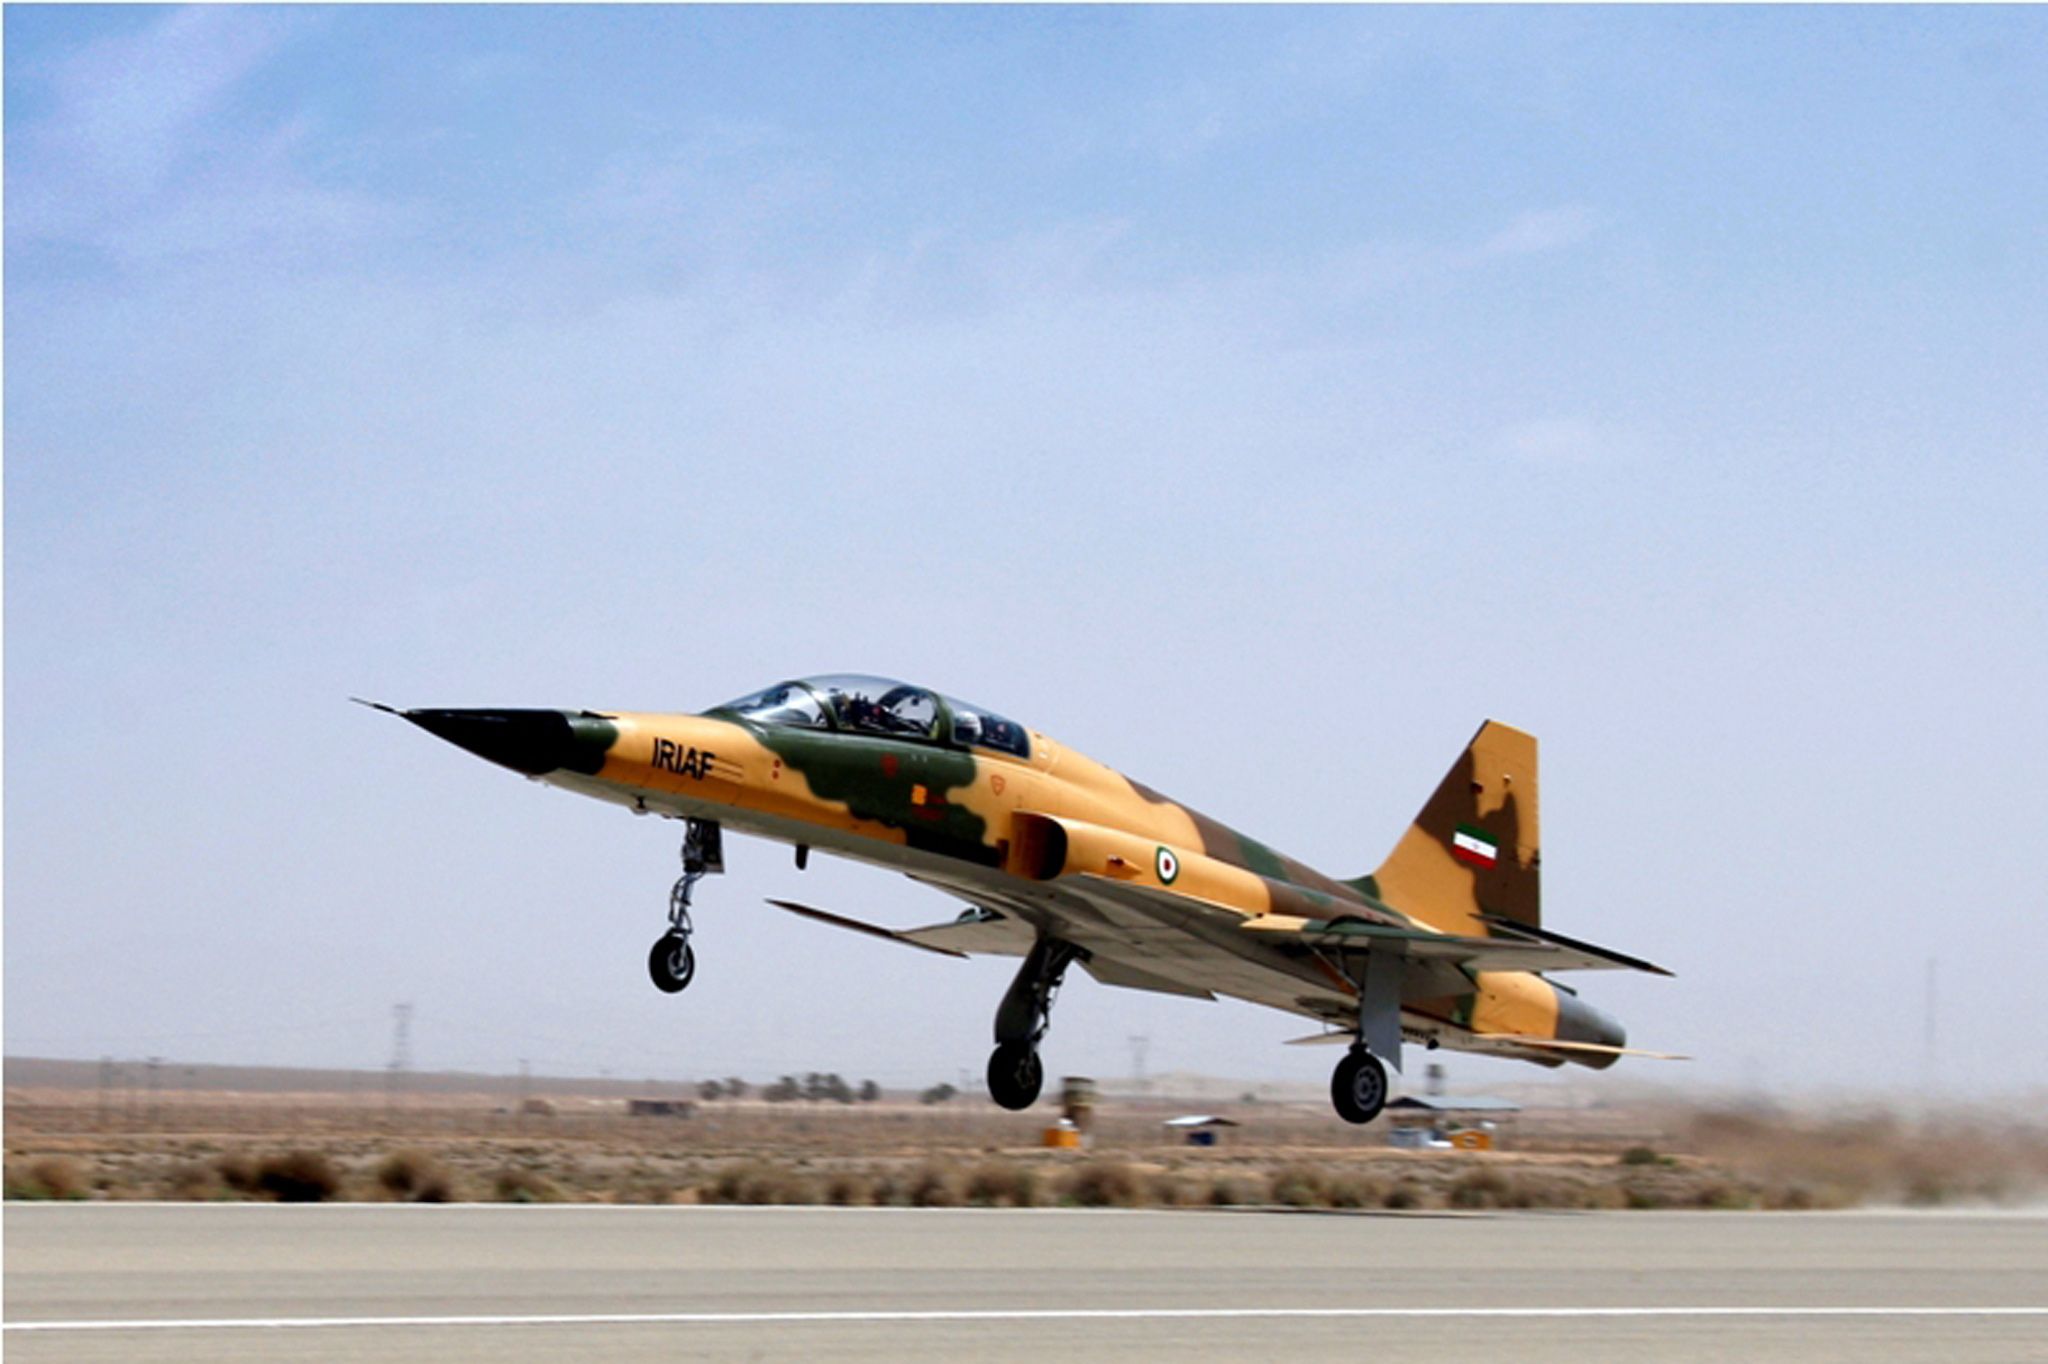 التواصل المباشر مع الطائرات دون طيار الهجومية الإيرانية؛ ميزة جديدة تتمتع بها مقاتلة "كوثر" + صور